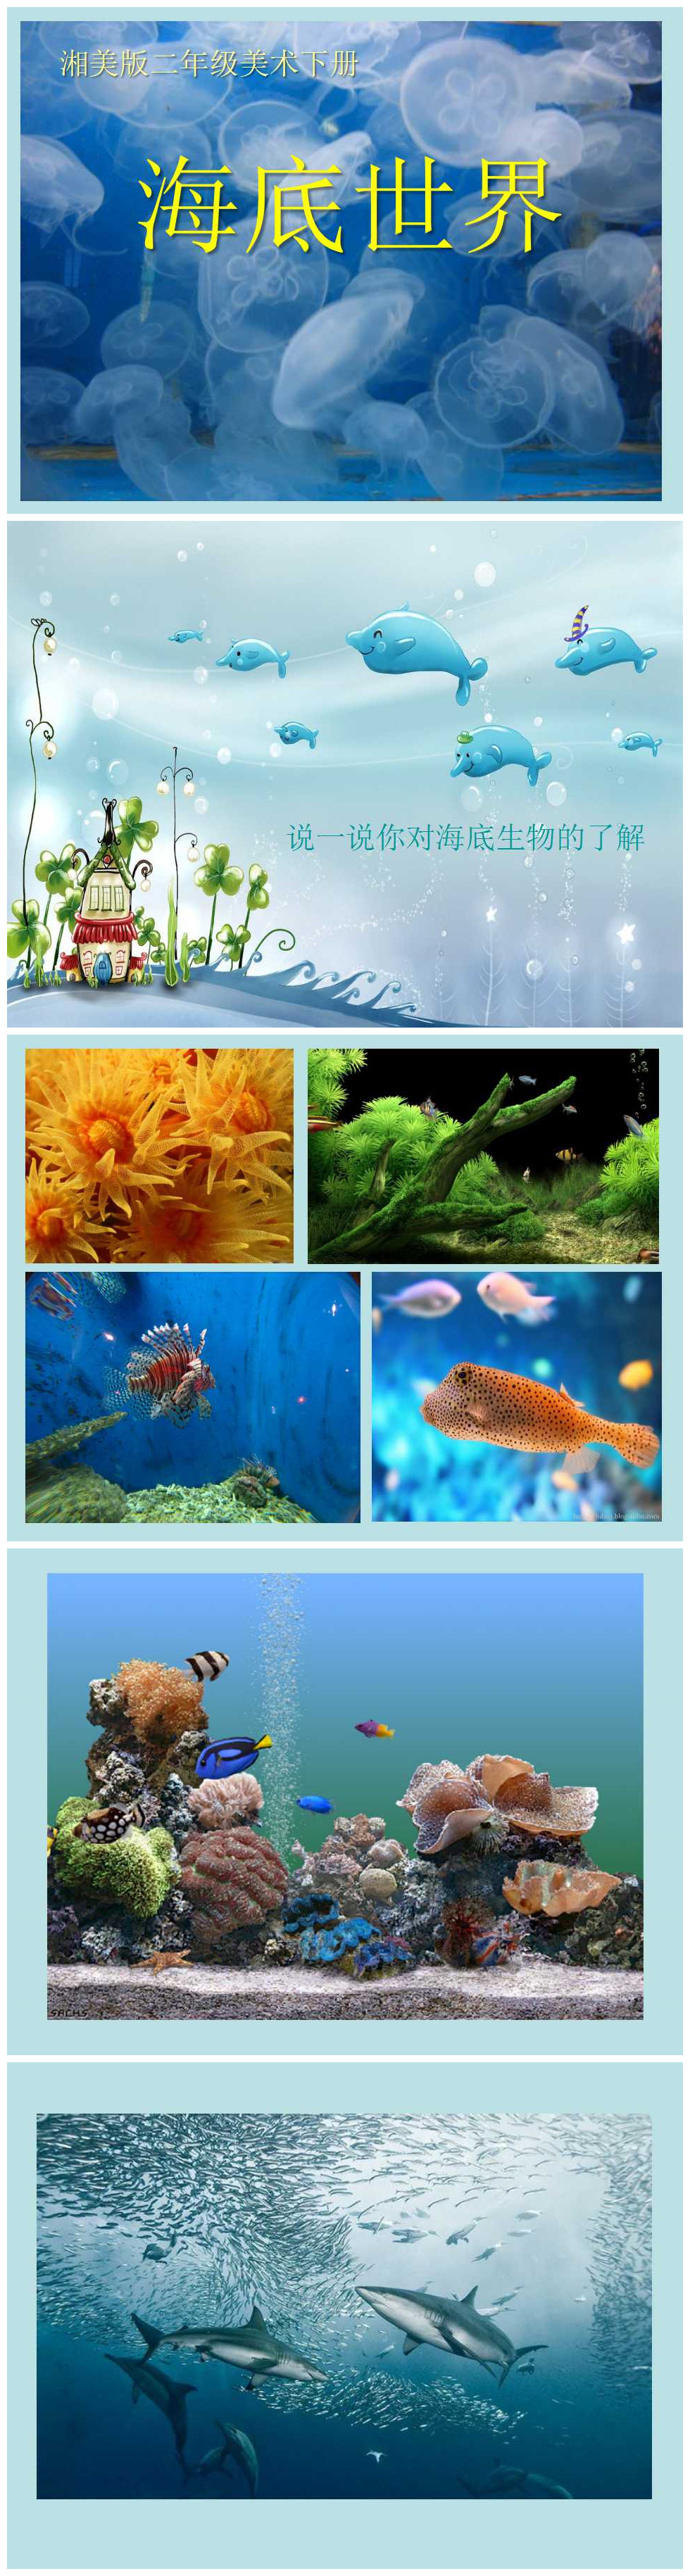 《海底世界》PPT课件下载PPT课件下载